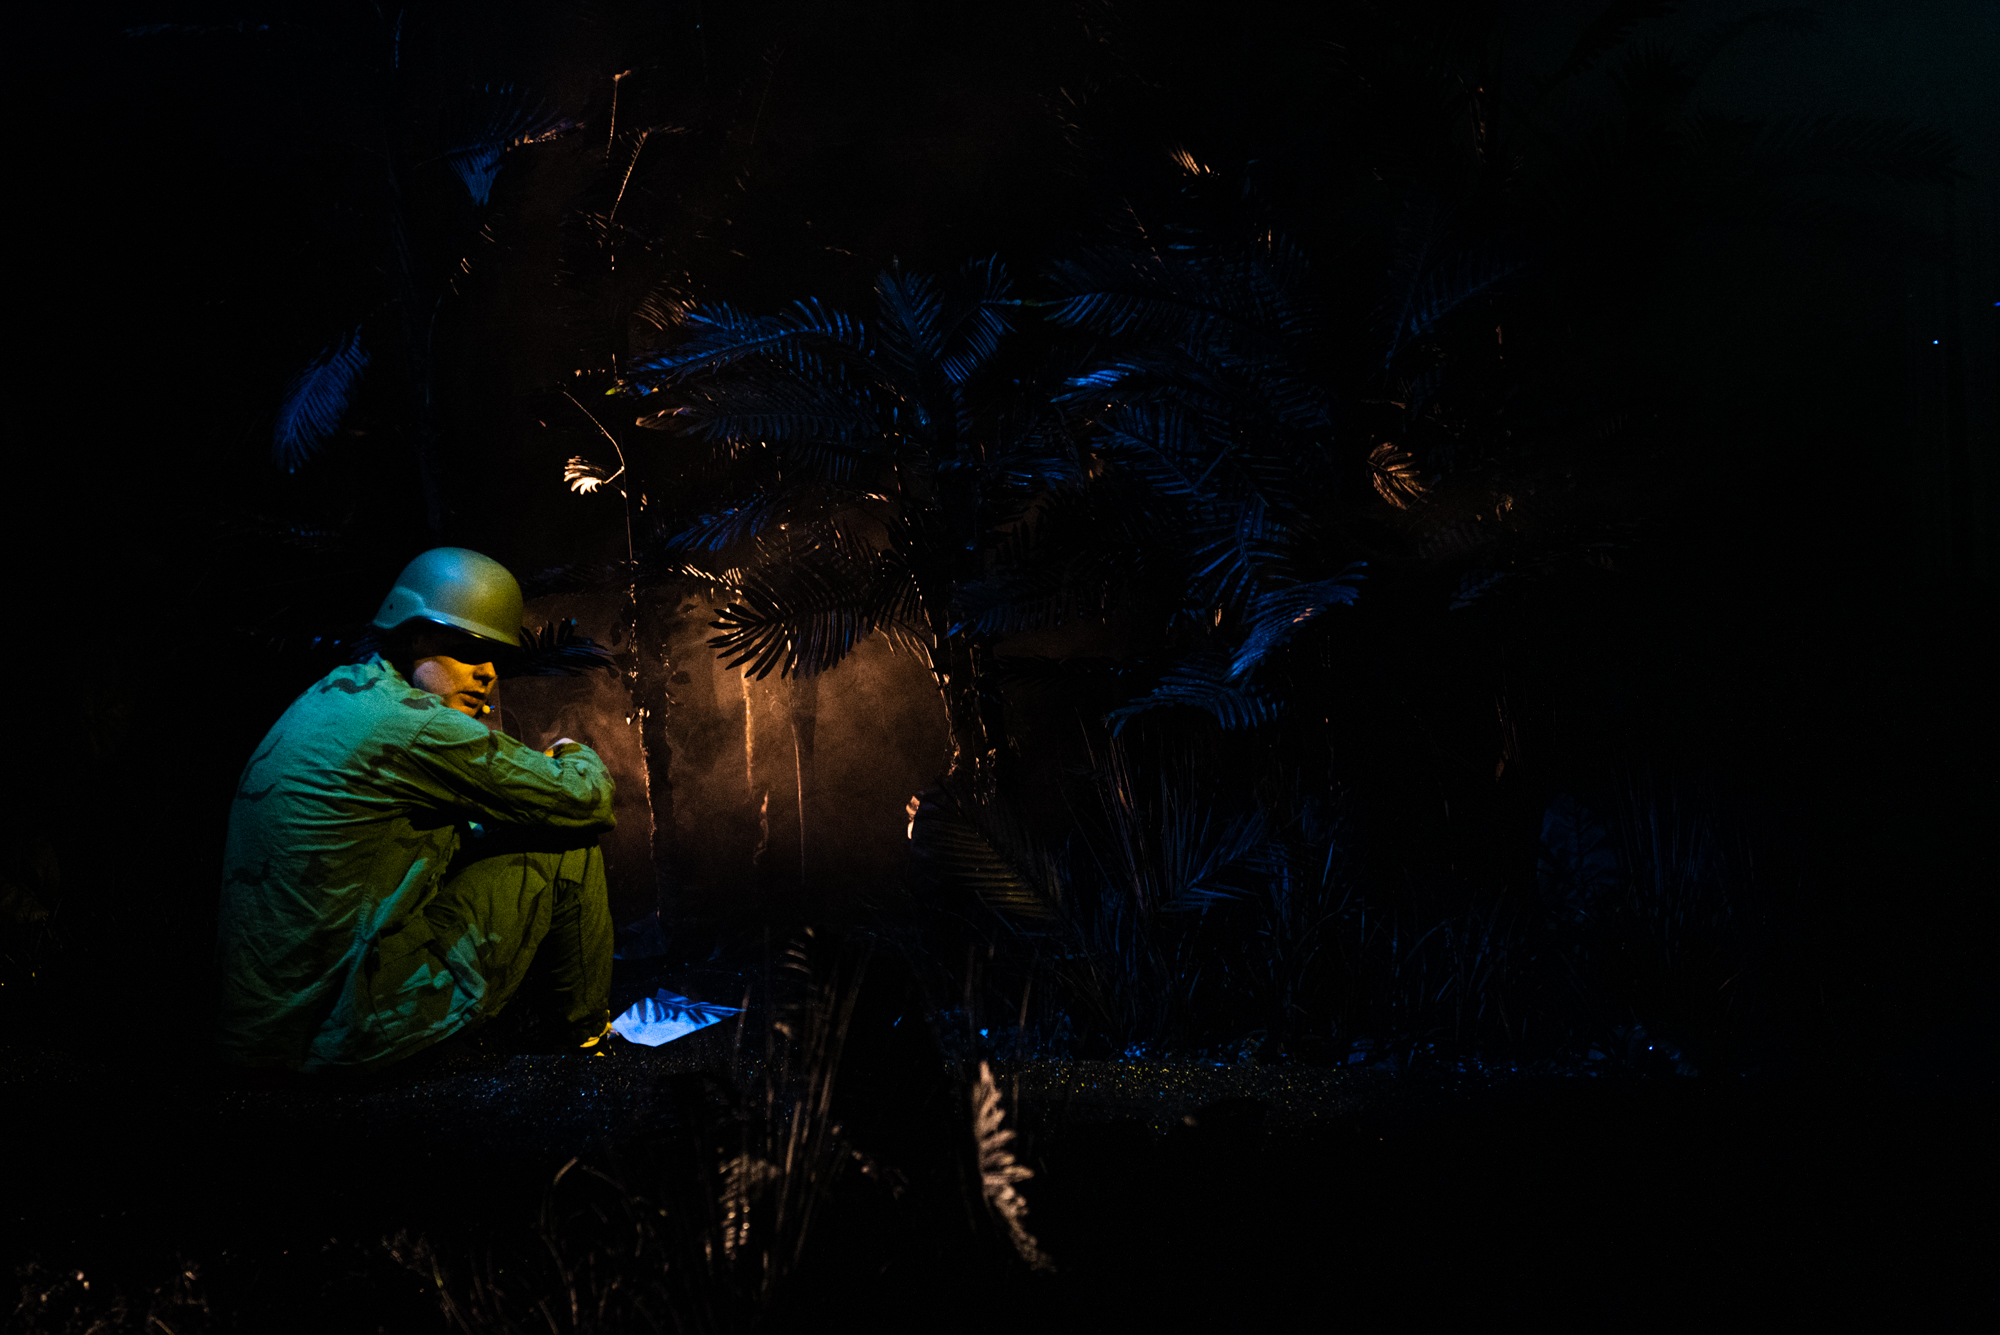 Po lewej siedzi mężczyzna w hełmie i zielonym mundurze. Widać prawy profil. Tłem są rośliny ledwo widoczne w ciemności.